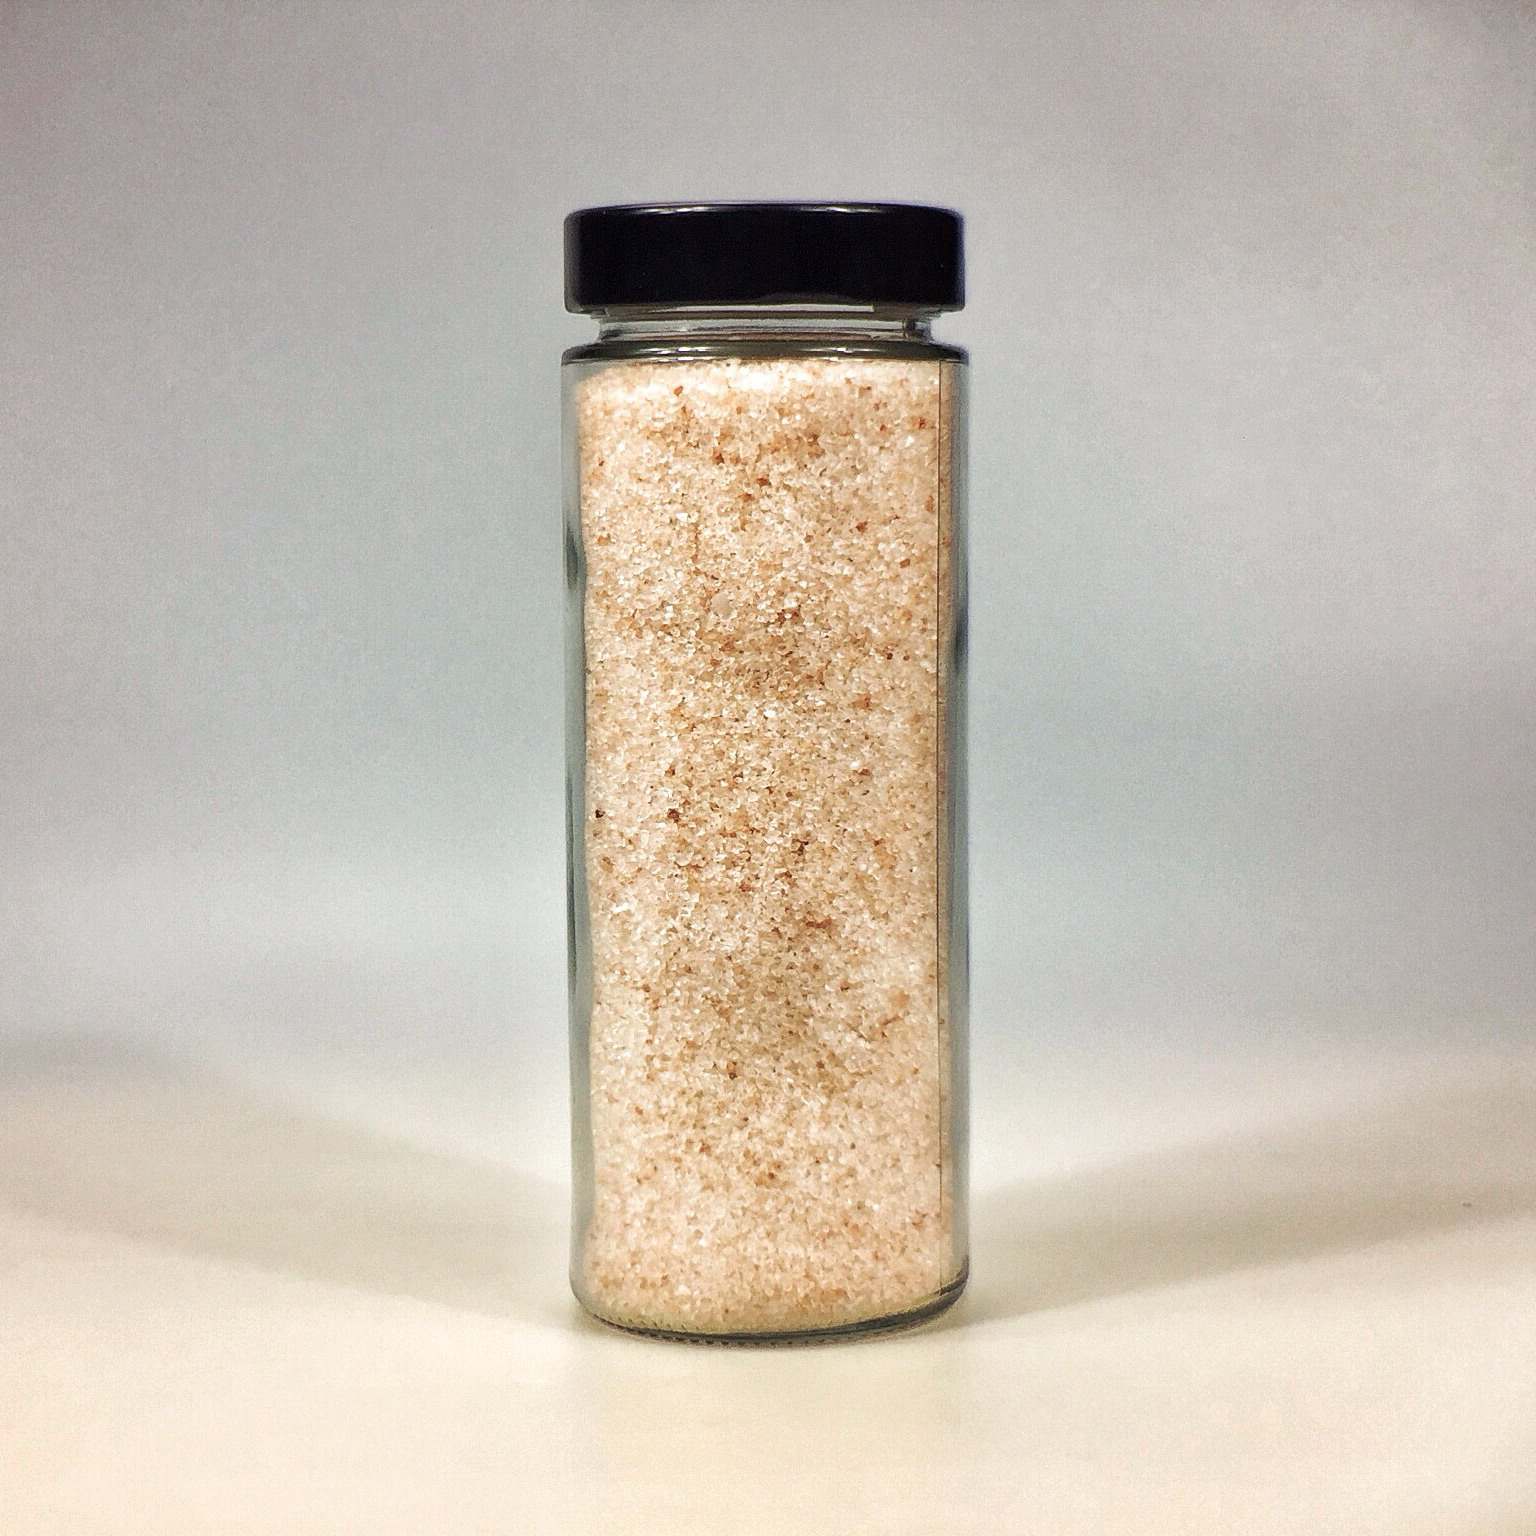 Himalaya Salz körnig gemahlen für Salzstreuer im grossen Glas mit schwarzer Deckel